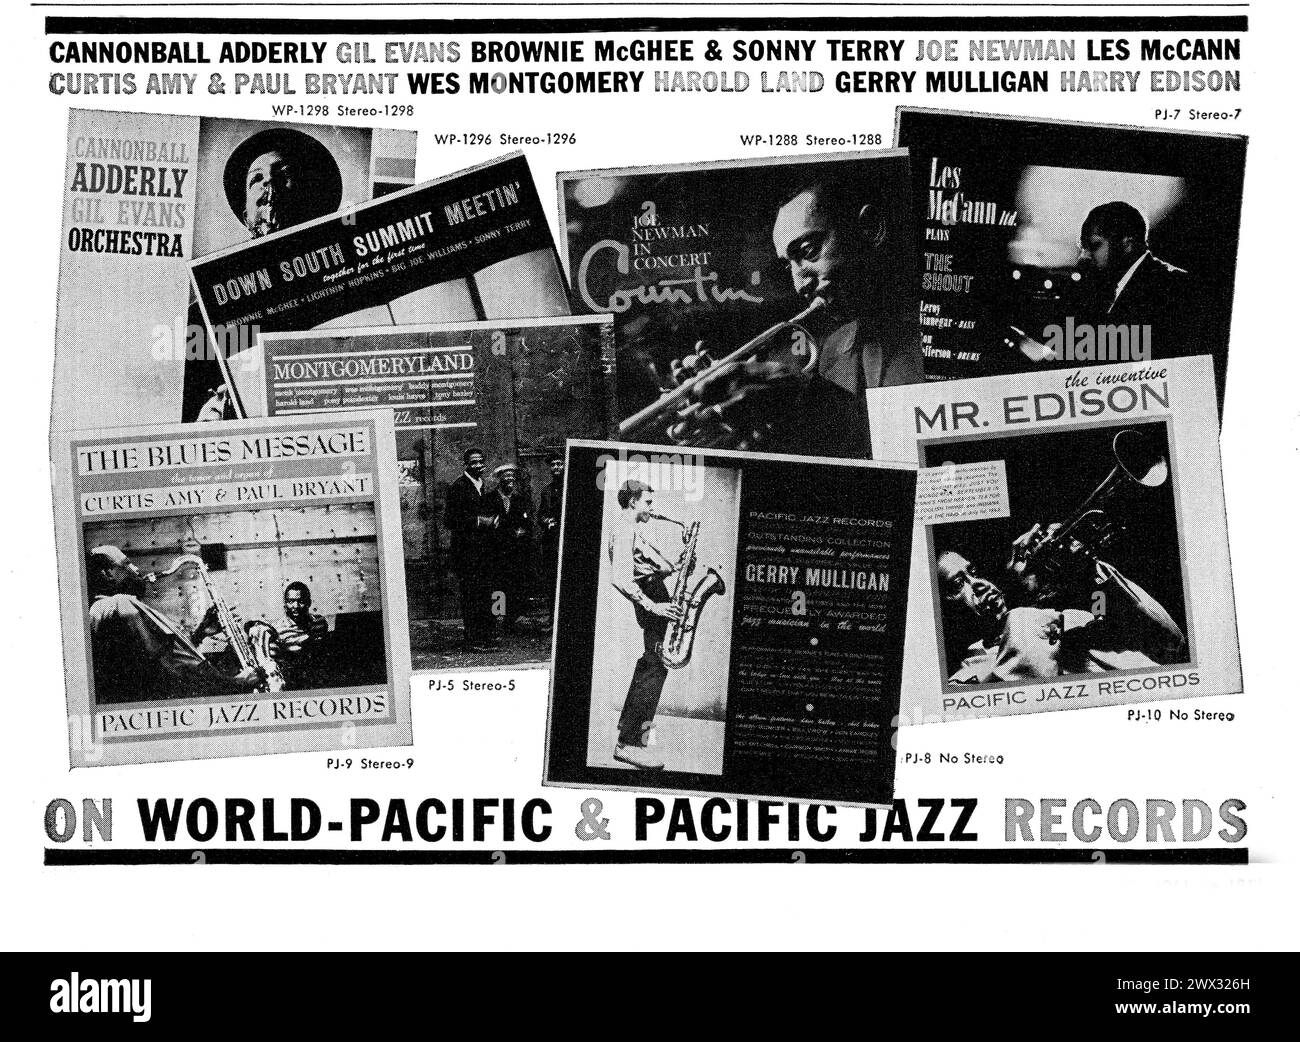 Eine Flauschwerbung aus einem Magazin der frühen 1960er Jahre für den Pacific Coast Jazz Records-Katalog, in der Sevral ihrer Künstler wie Gerry Mulligan, Sweets Edison und die Montgomery Brüder gezeigt wird. Stockfoto